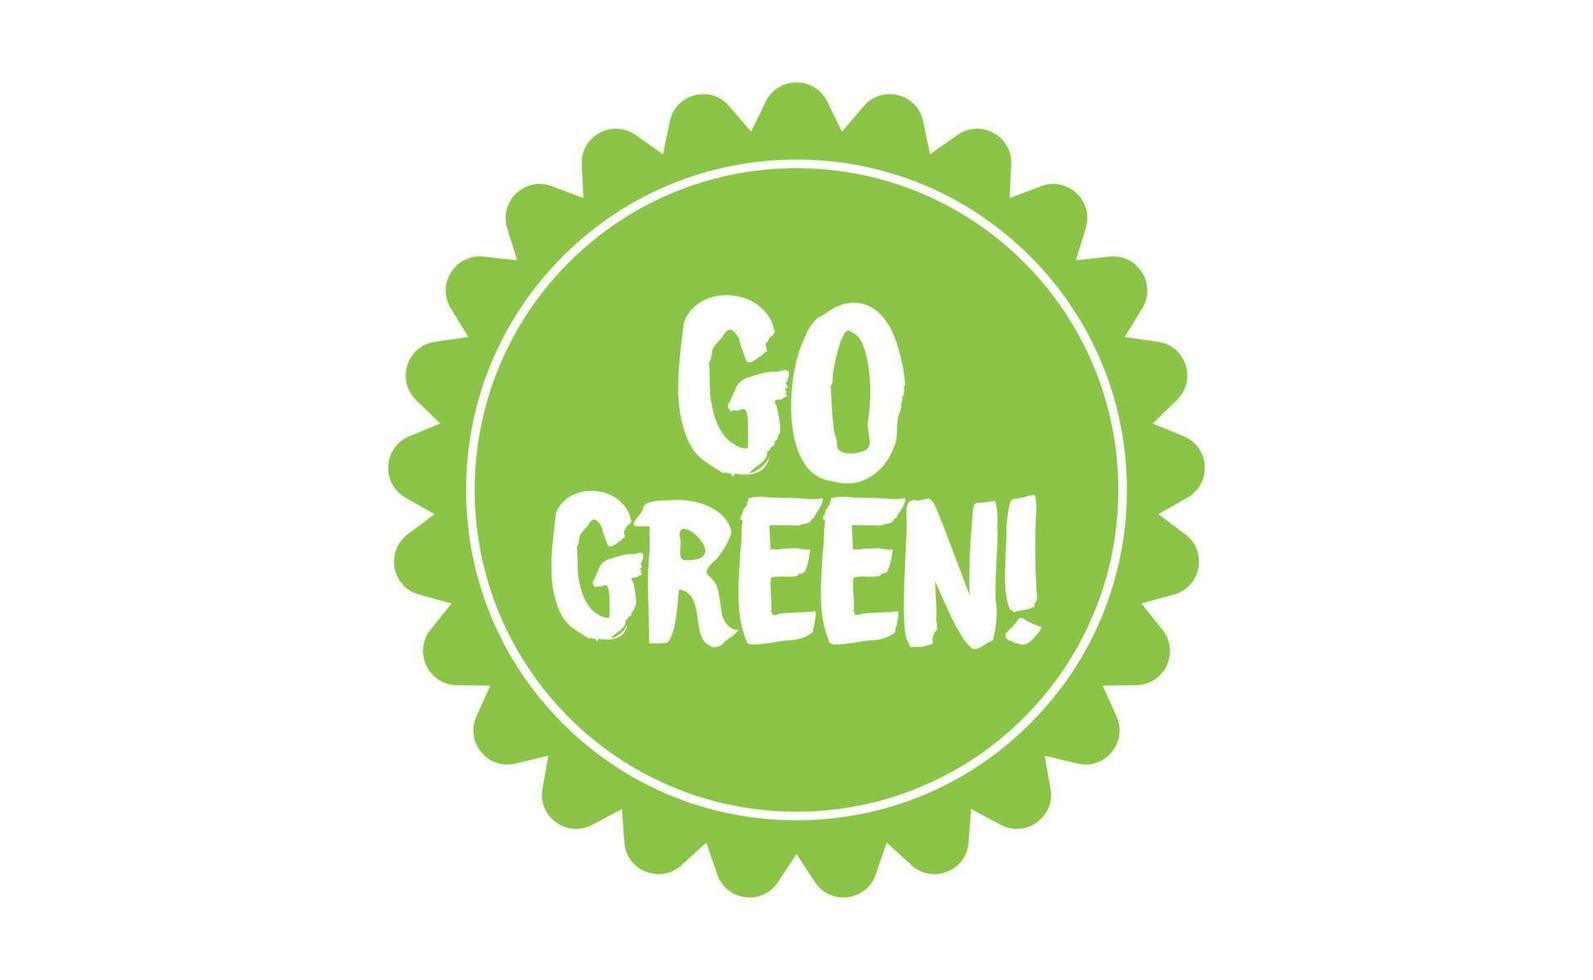 Vamos verde insignia. Respetuoso del medio ambiente eslogan. Insignia alfiler con ambiental conciencia mensaje. vector